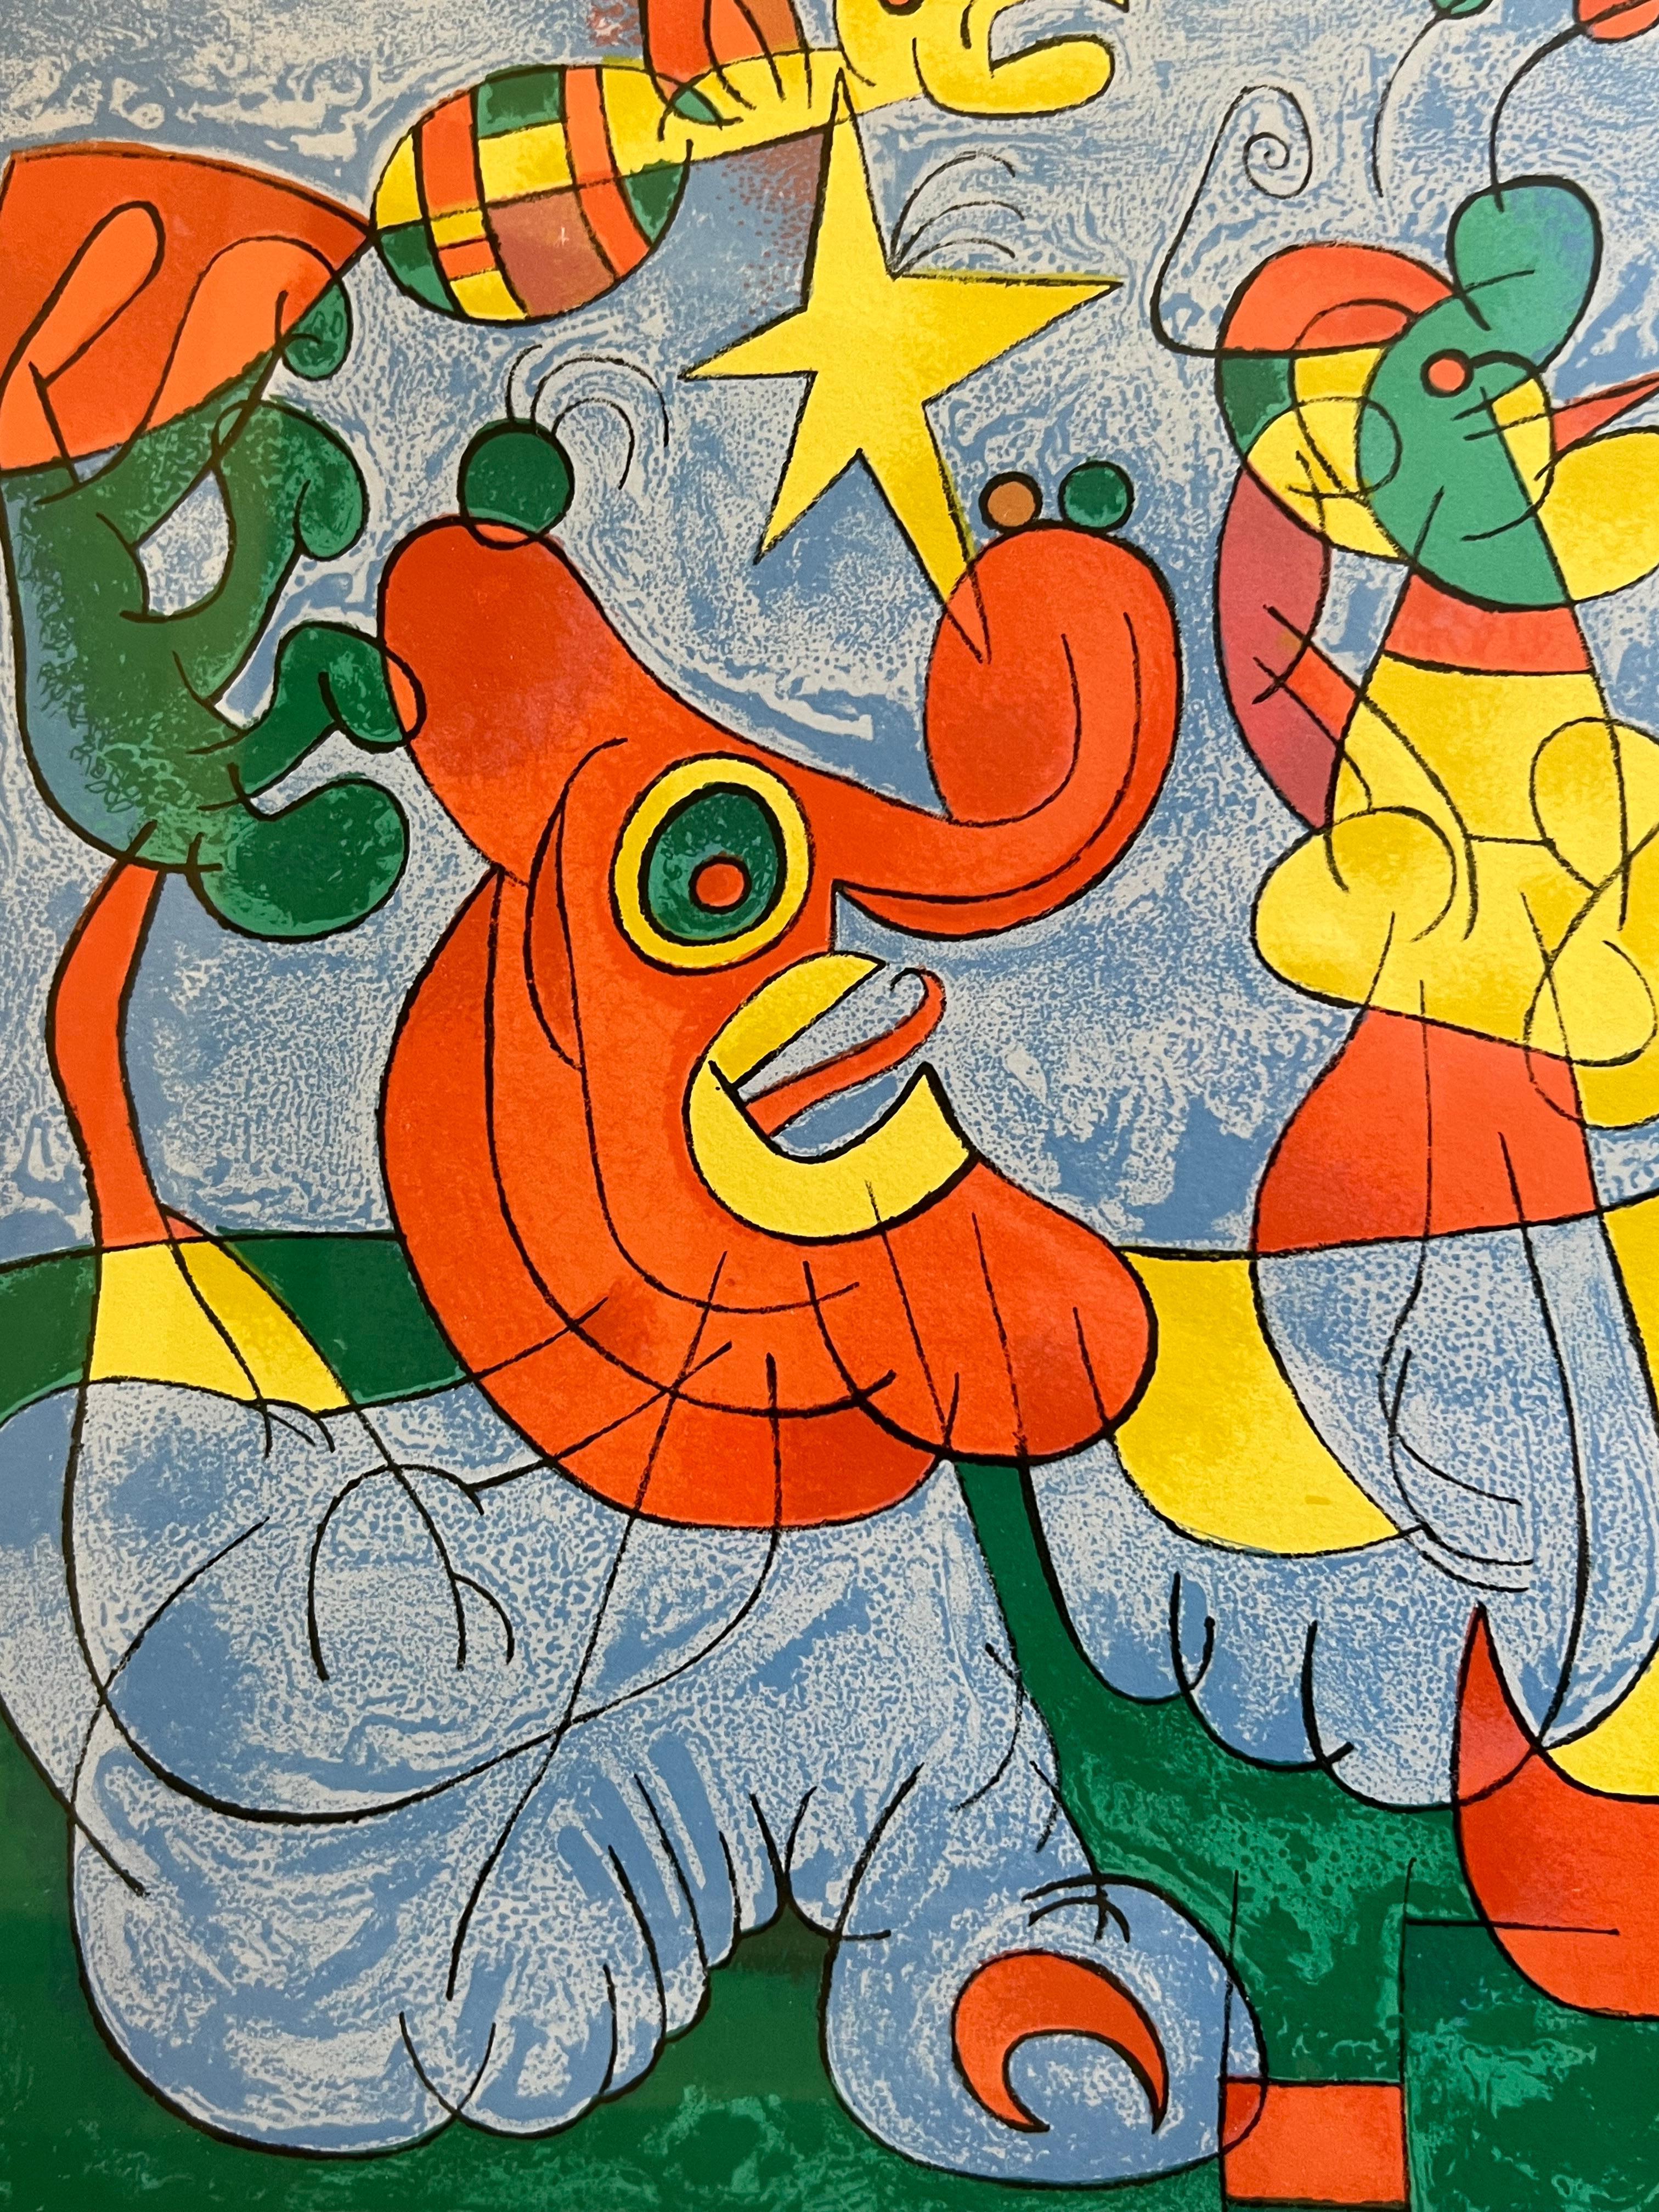 Grand Joan Miro Ubu roi (King Ubu) : planche 3 LITHOGRAPH colorée, 1966 - Surréalisme Print par Joan Miró